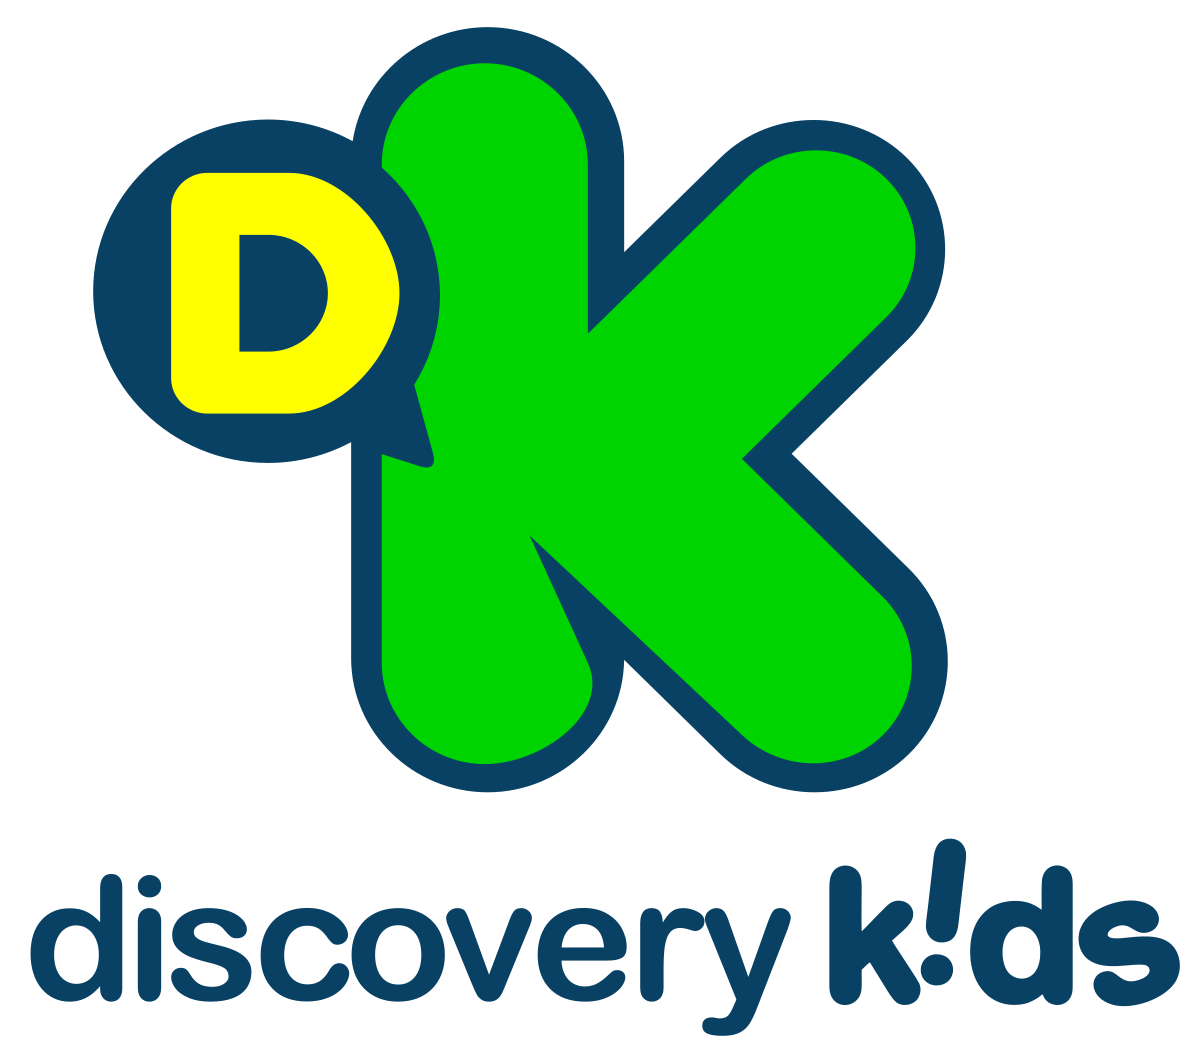 Discovery Kids - Wikipedia